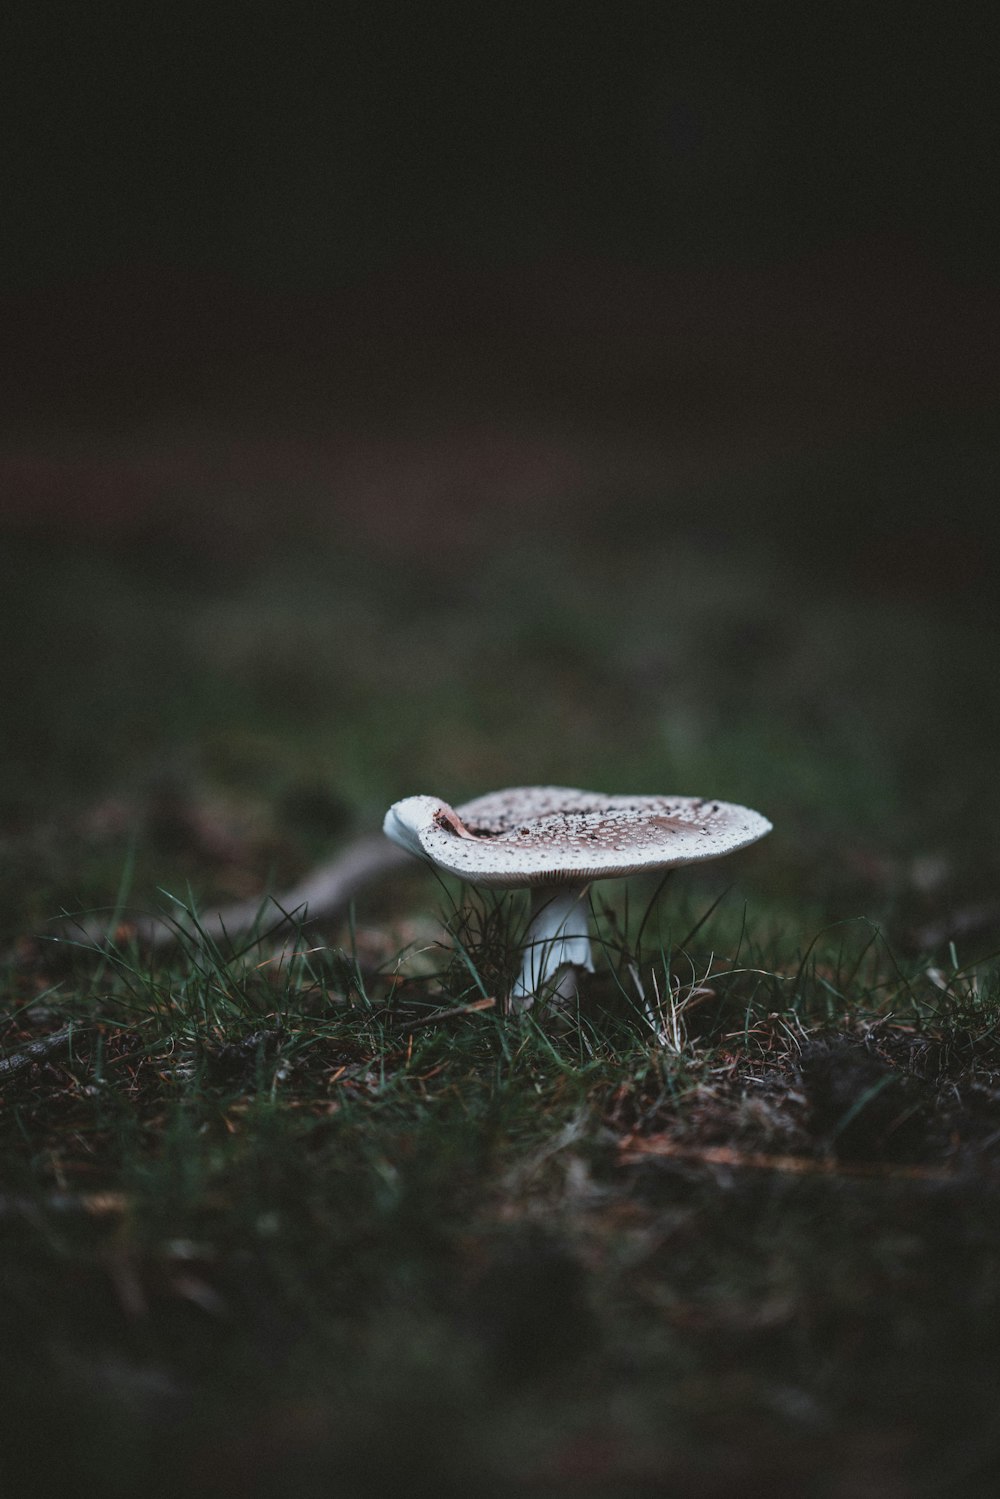 brown mushroom on grass field